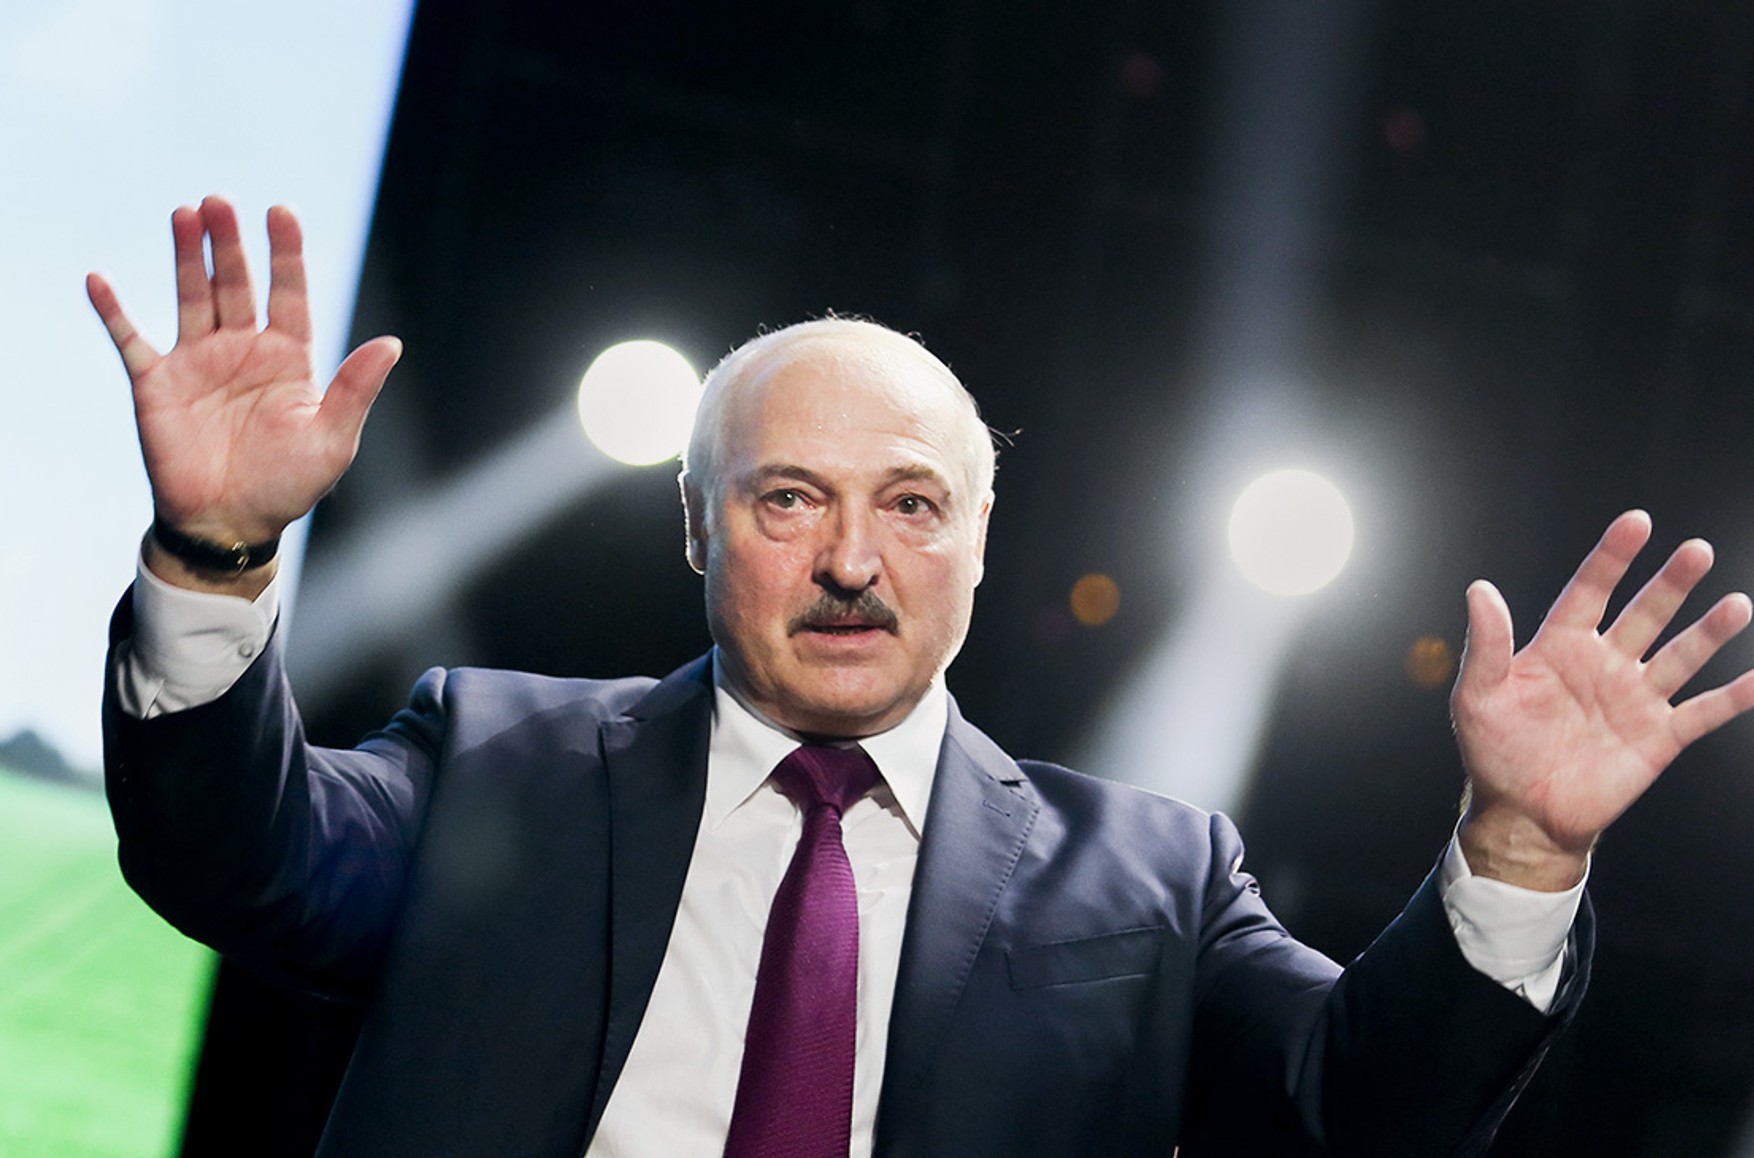 Ще шість європейських країн приєдналися до санкцій ЄС проти режиму Лукашенка